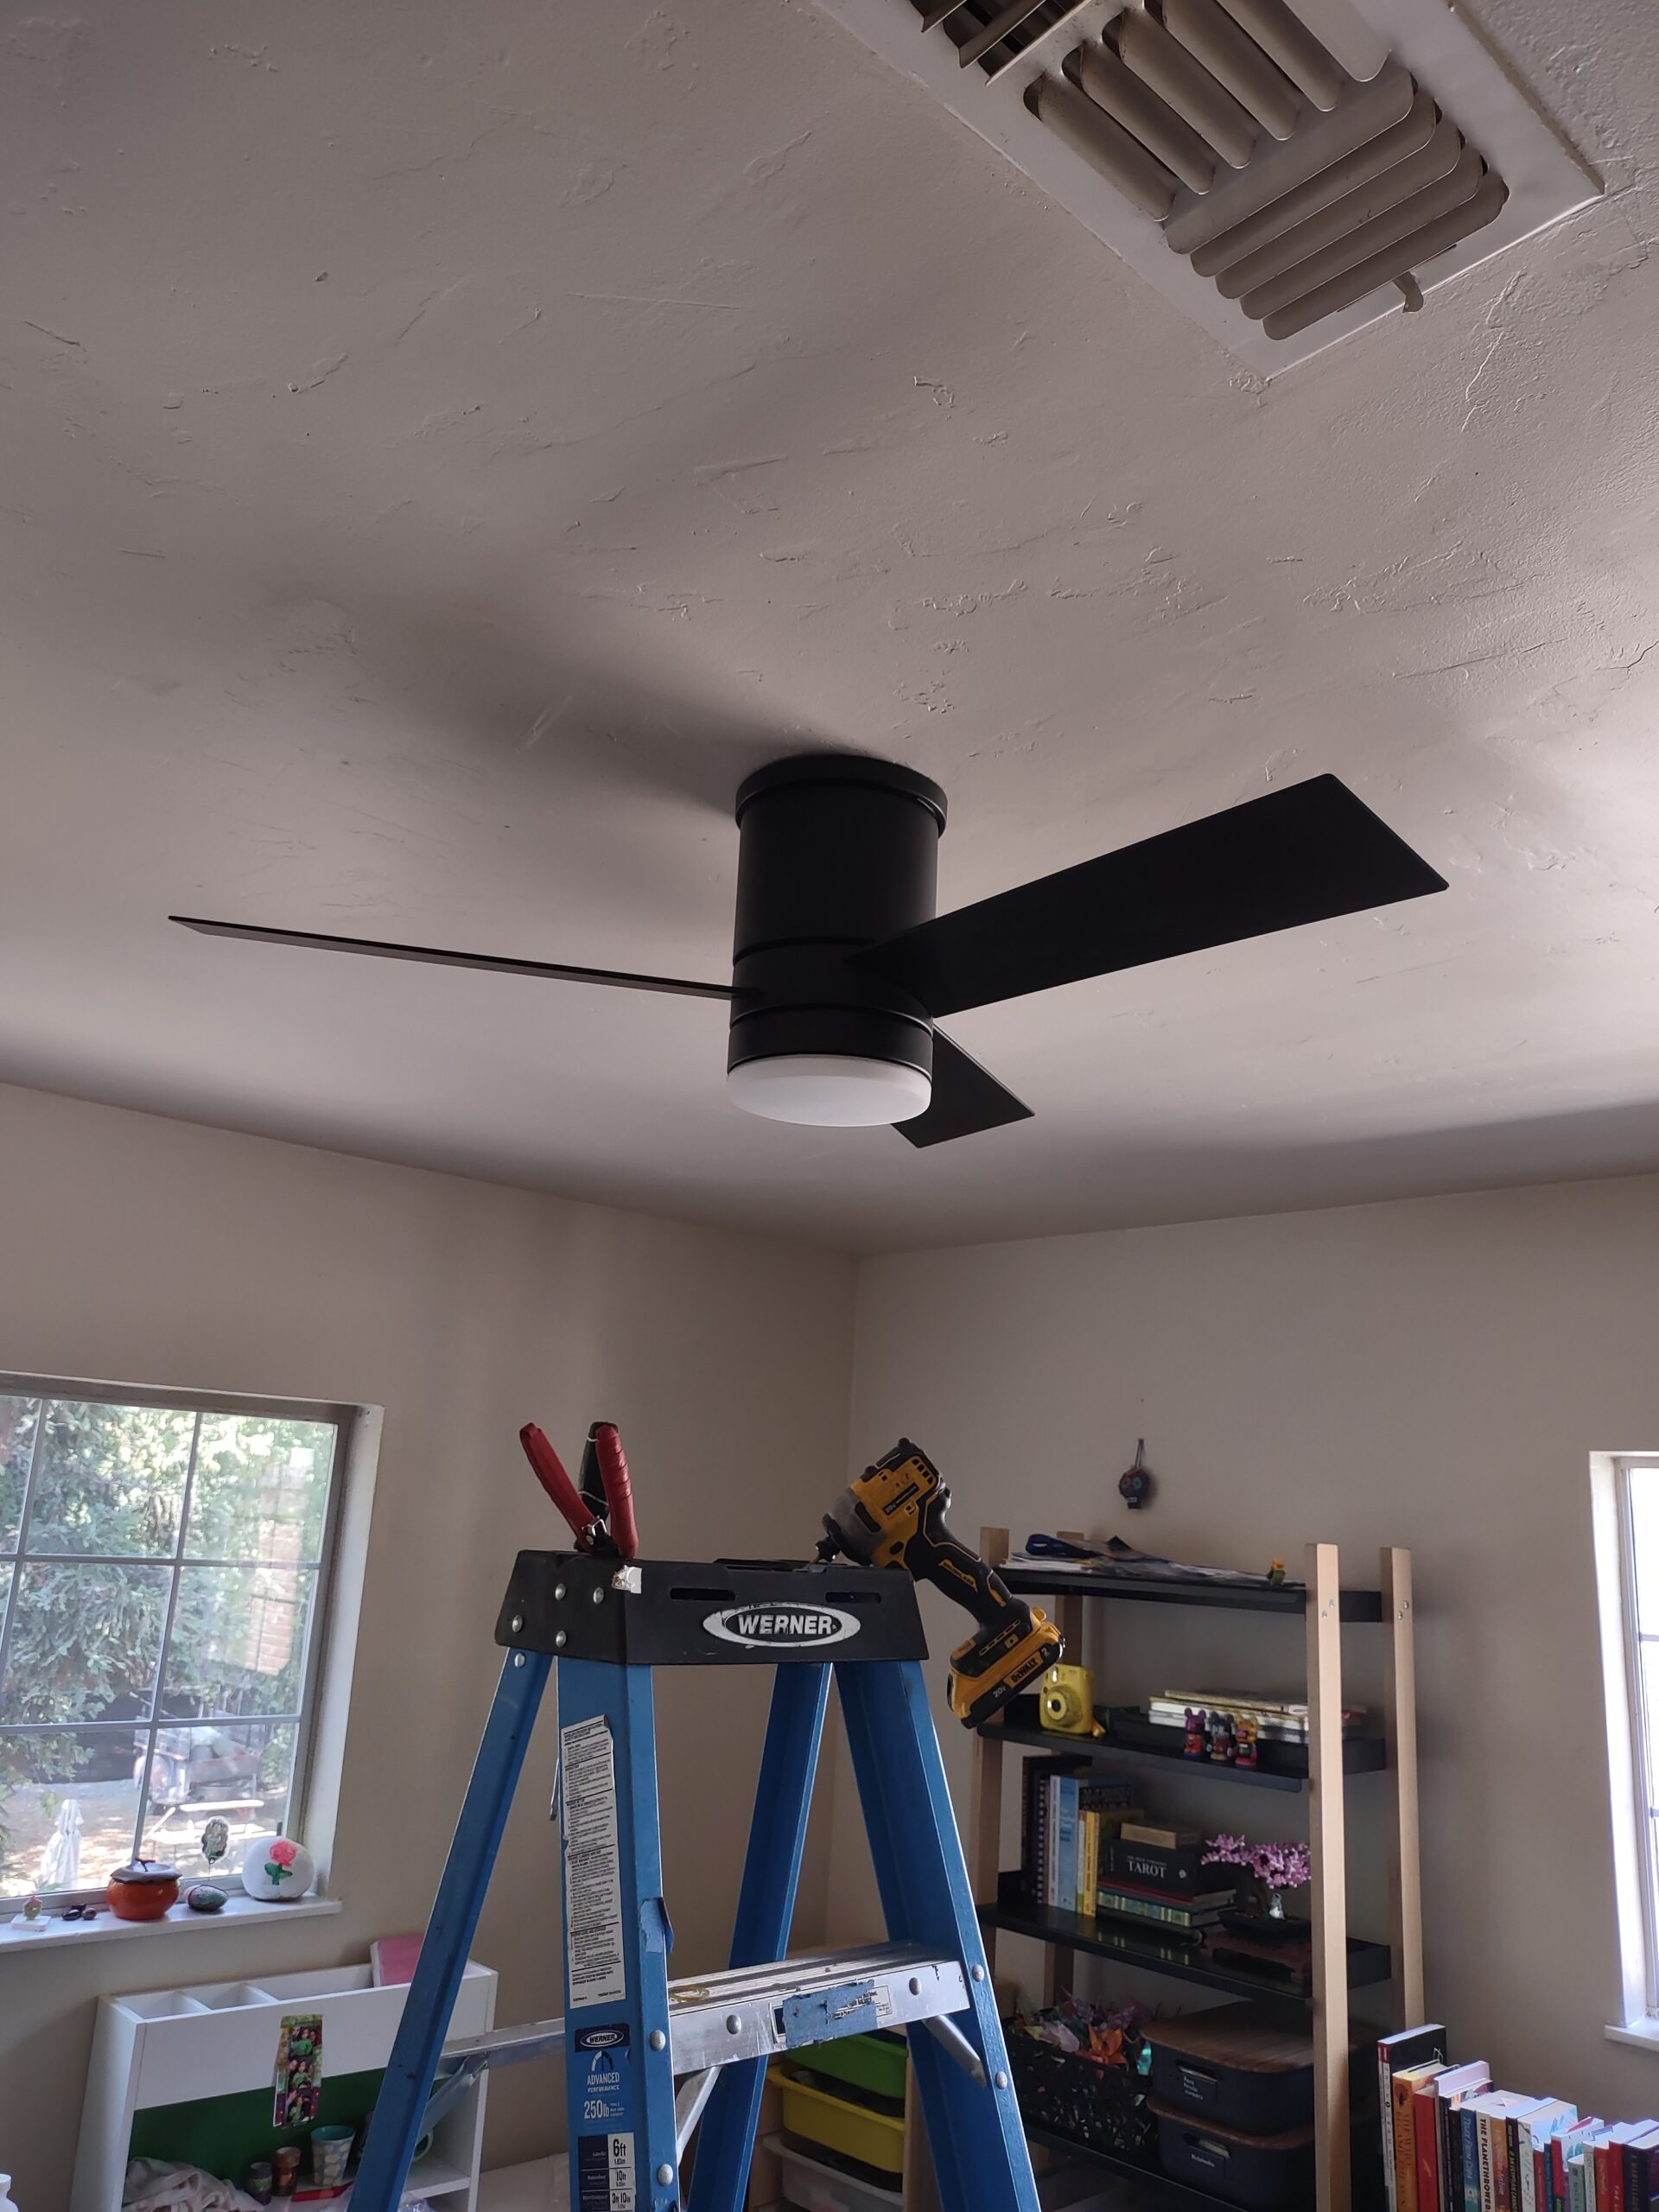 Installation ceiling fan